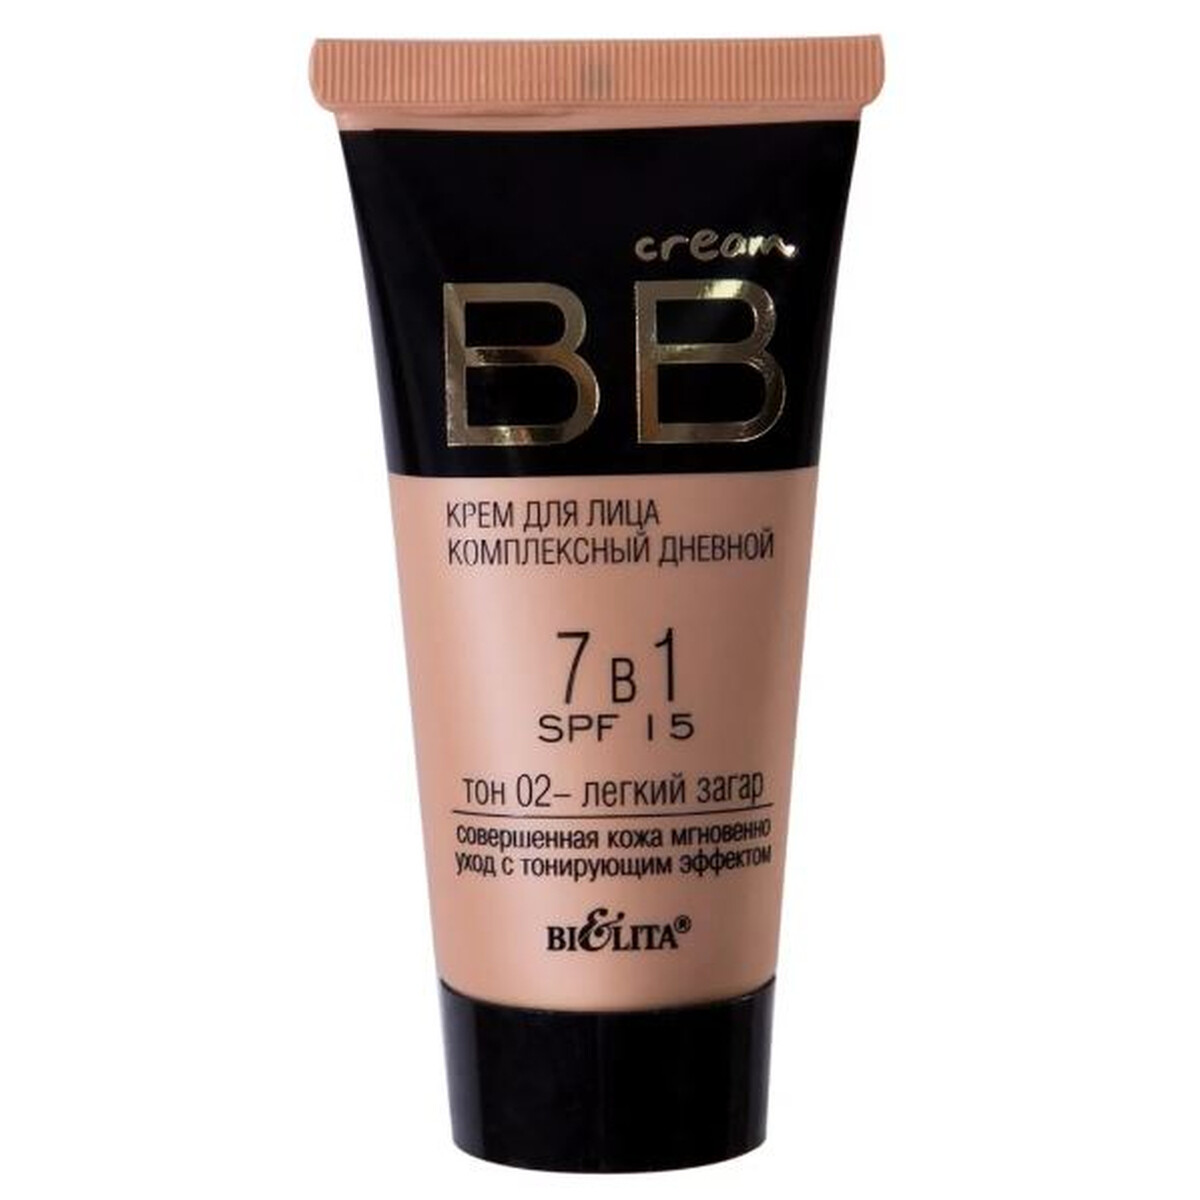     bb cream 71